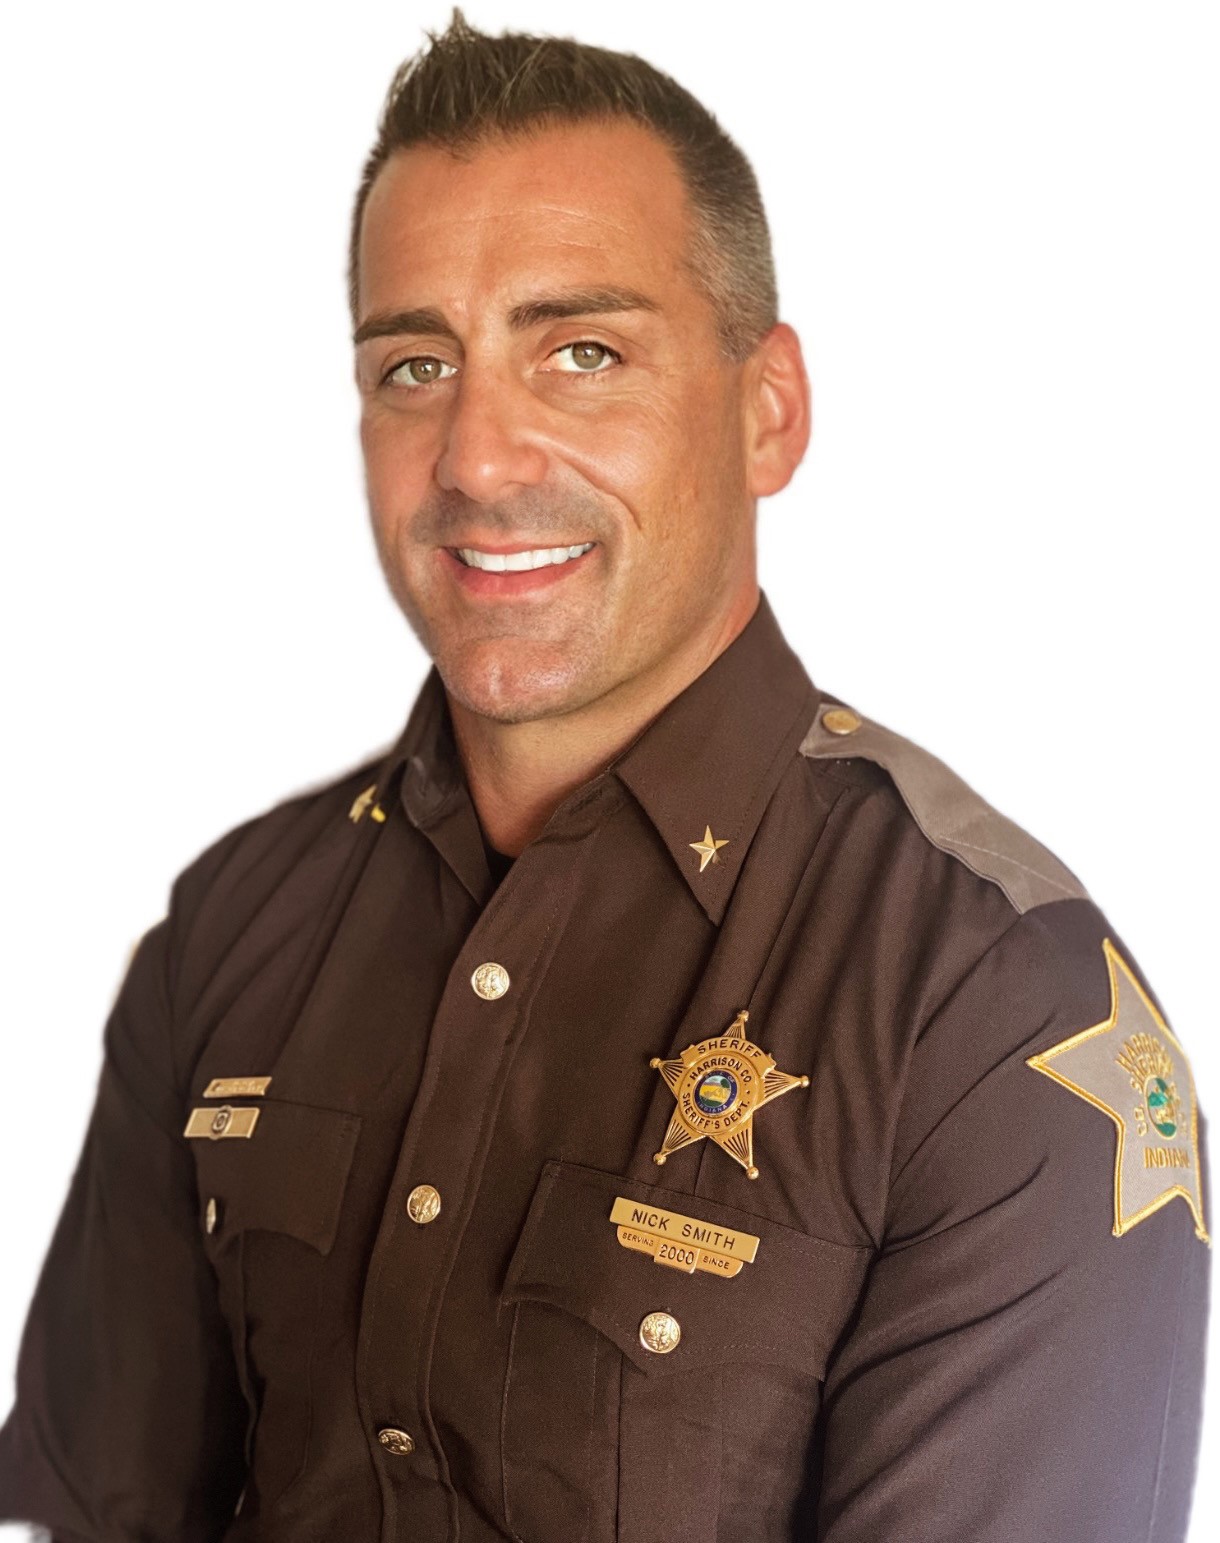 Sheriff Nick Smith